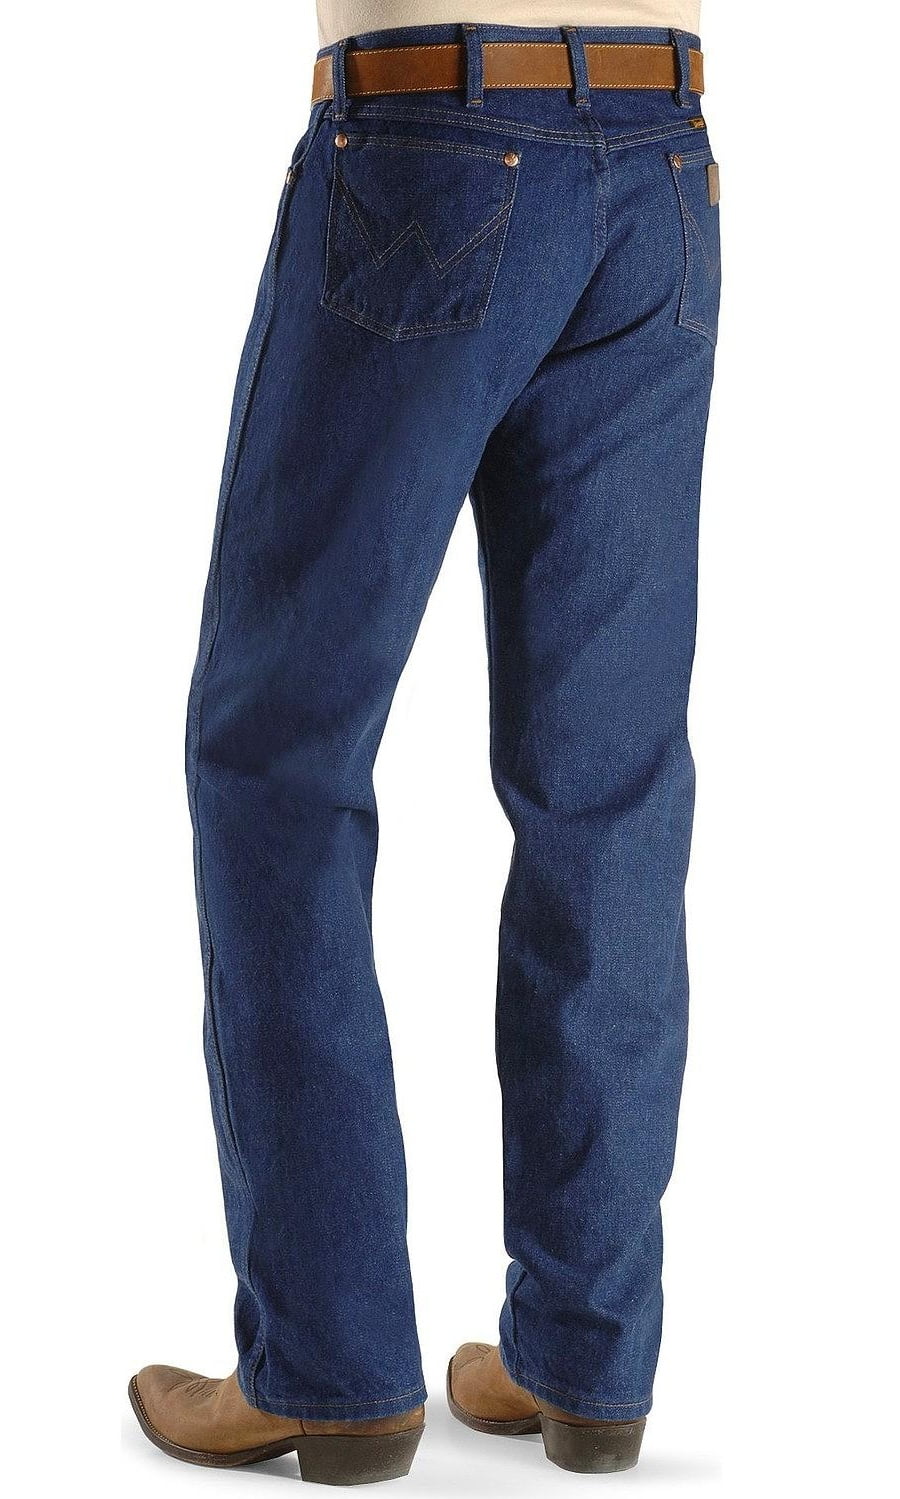 walmart black friday wrangler jeans